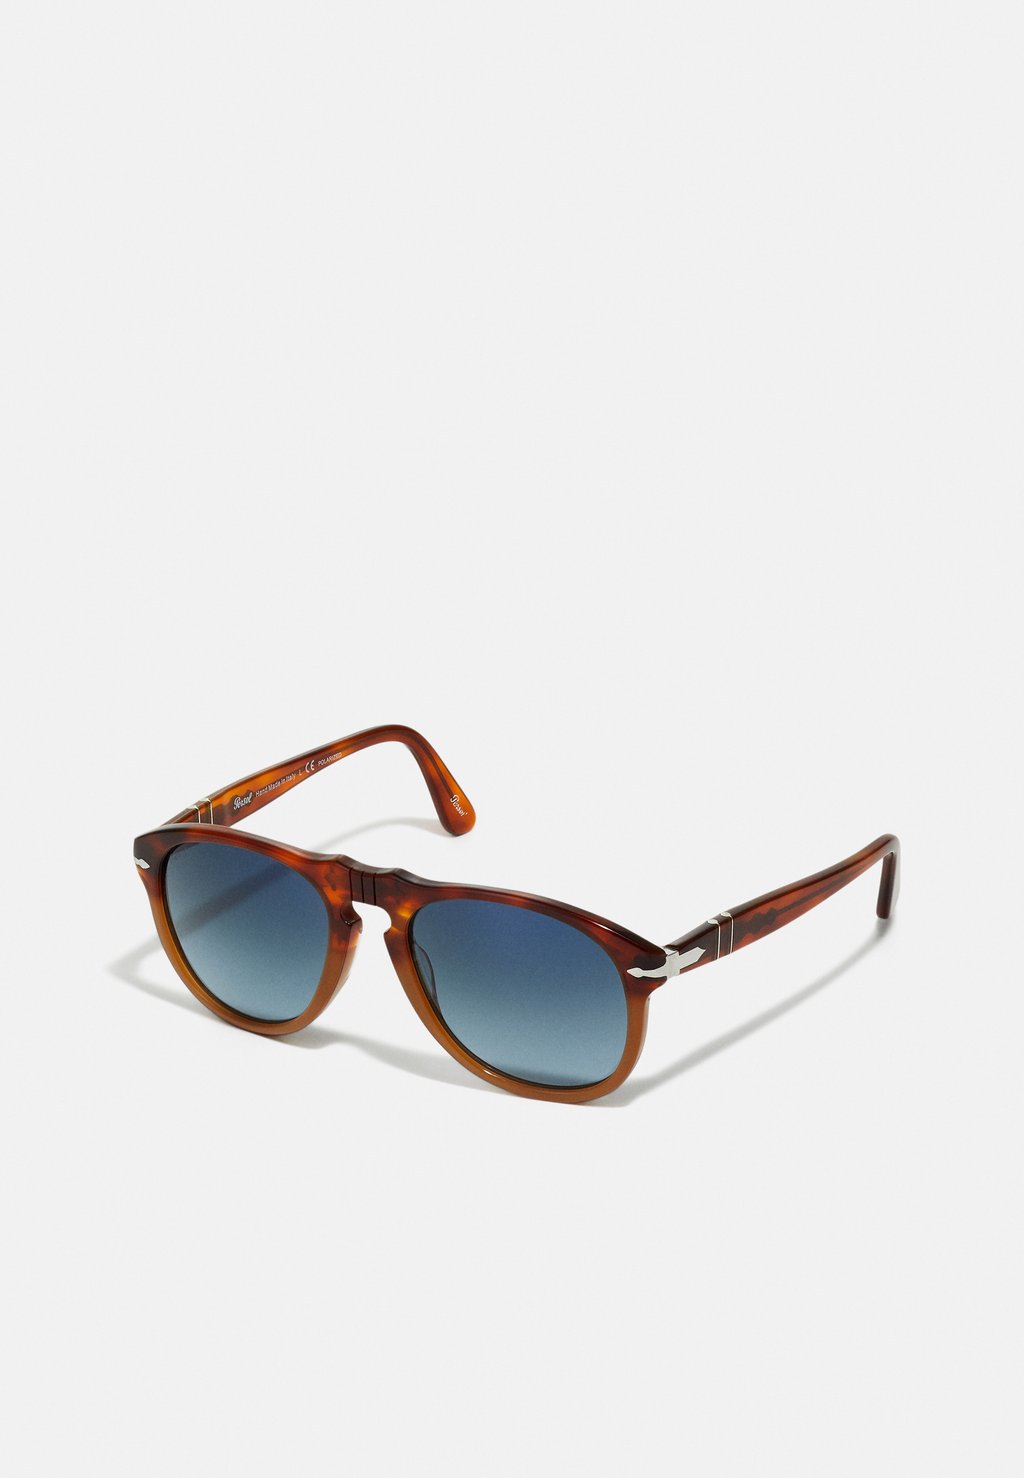 Солнцезащитные очки Persol after sale link